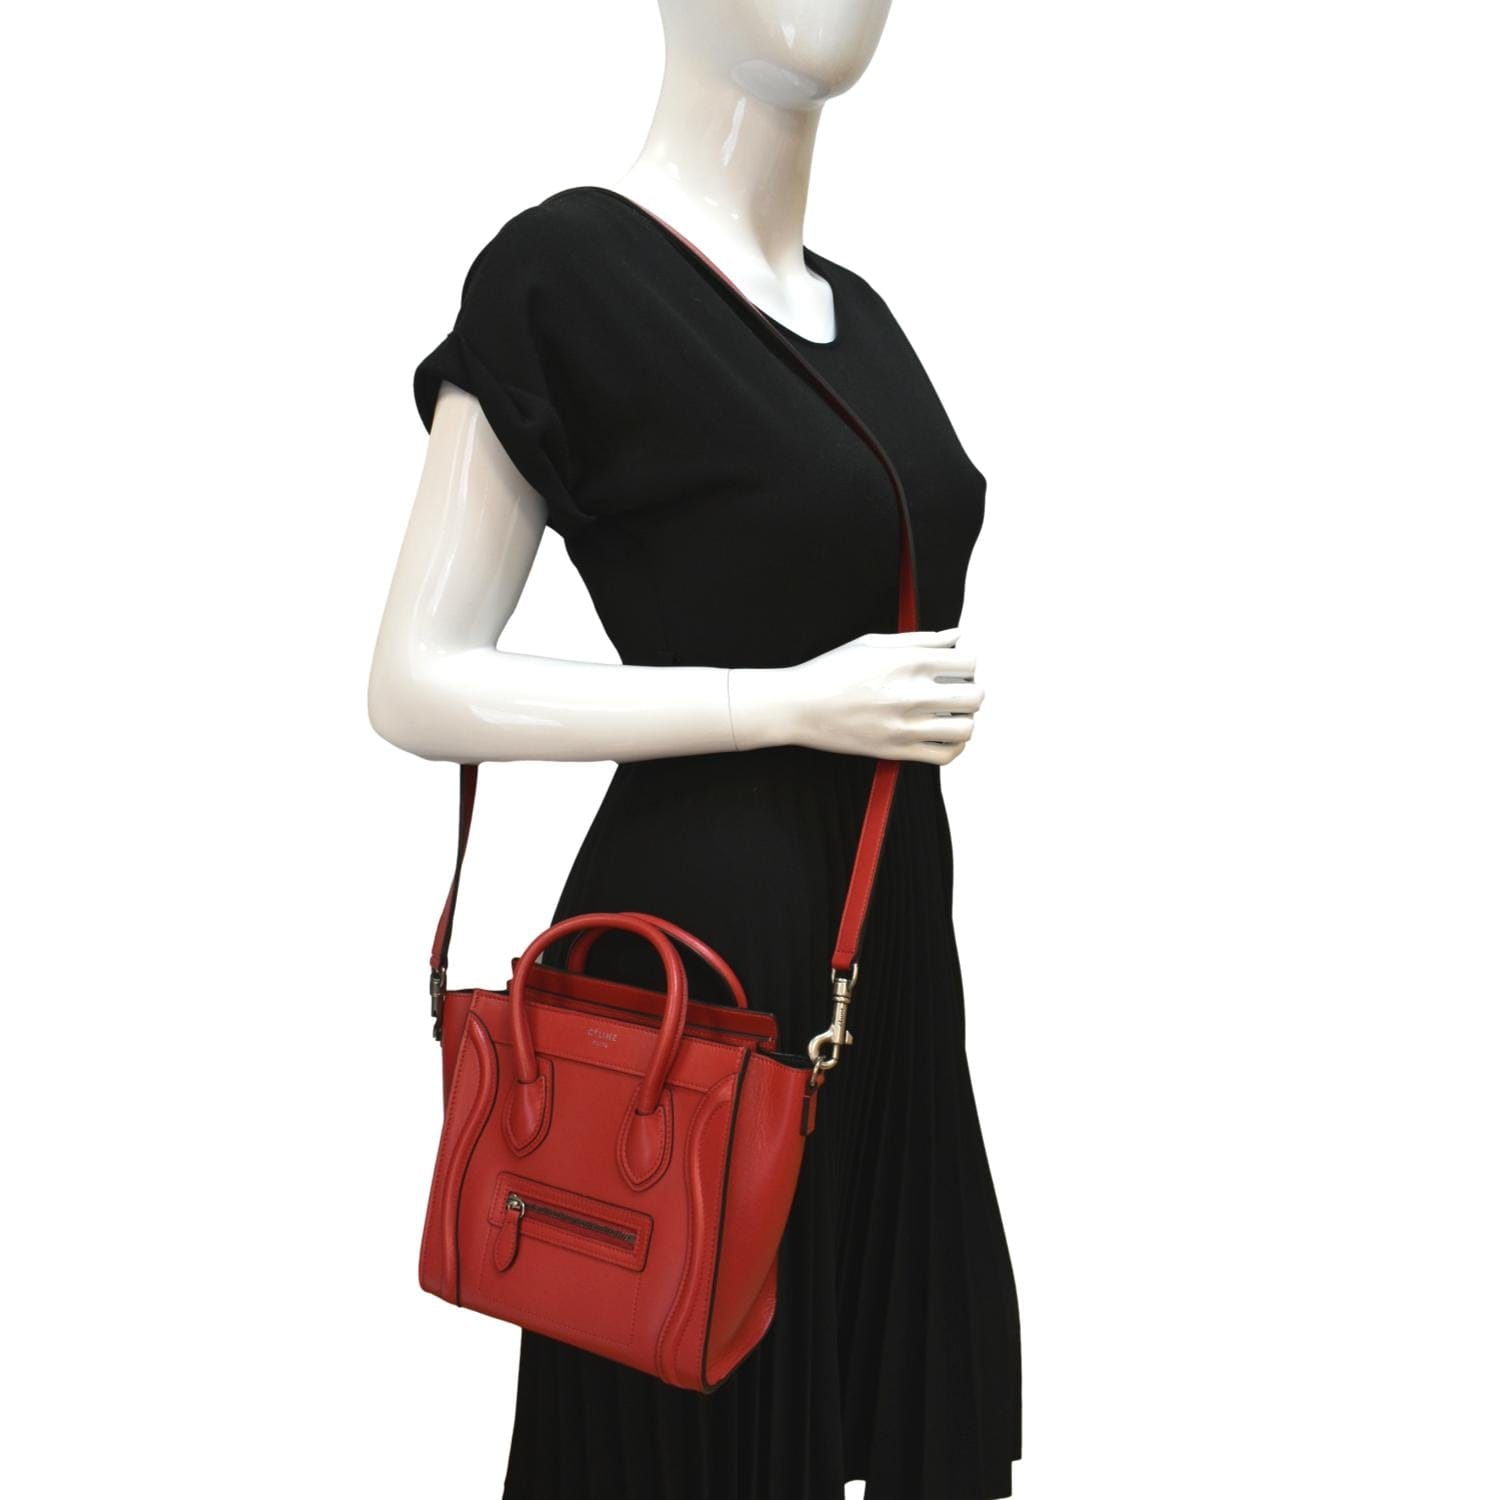 Celine Luggage Nano Shopper Women's Leather Handbag,Shoulder Bag Dark Red